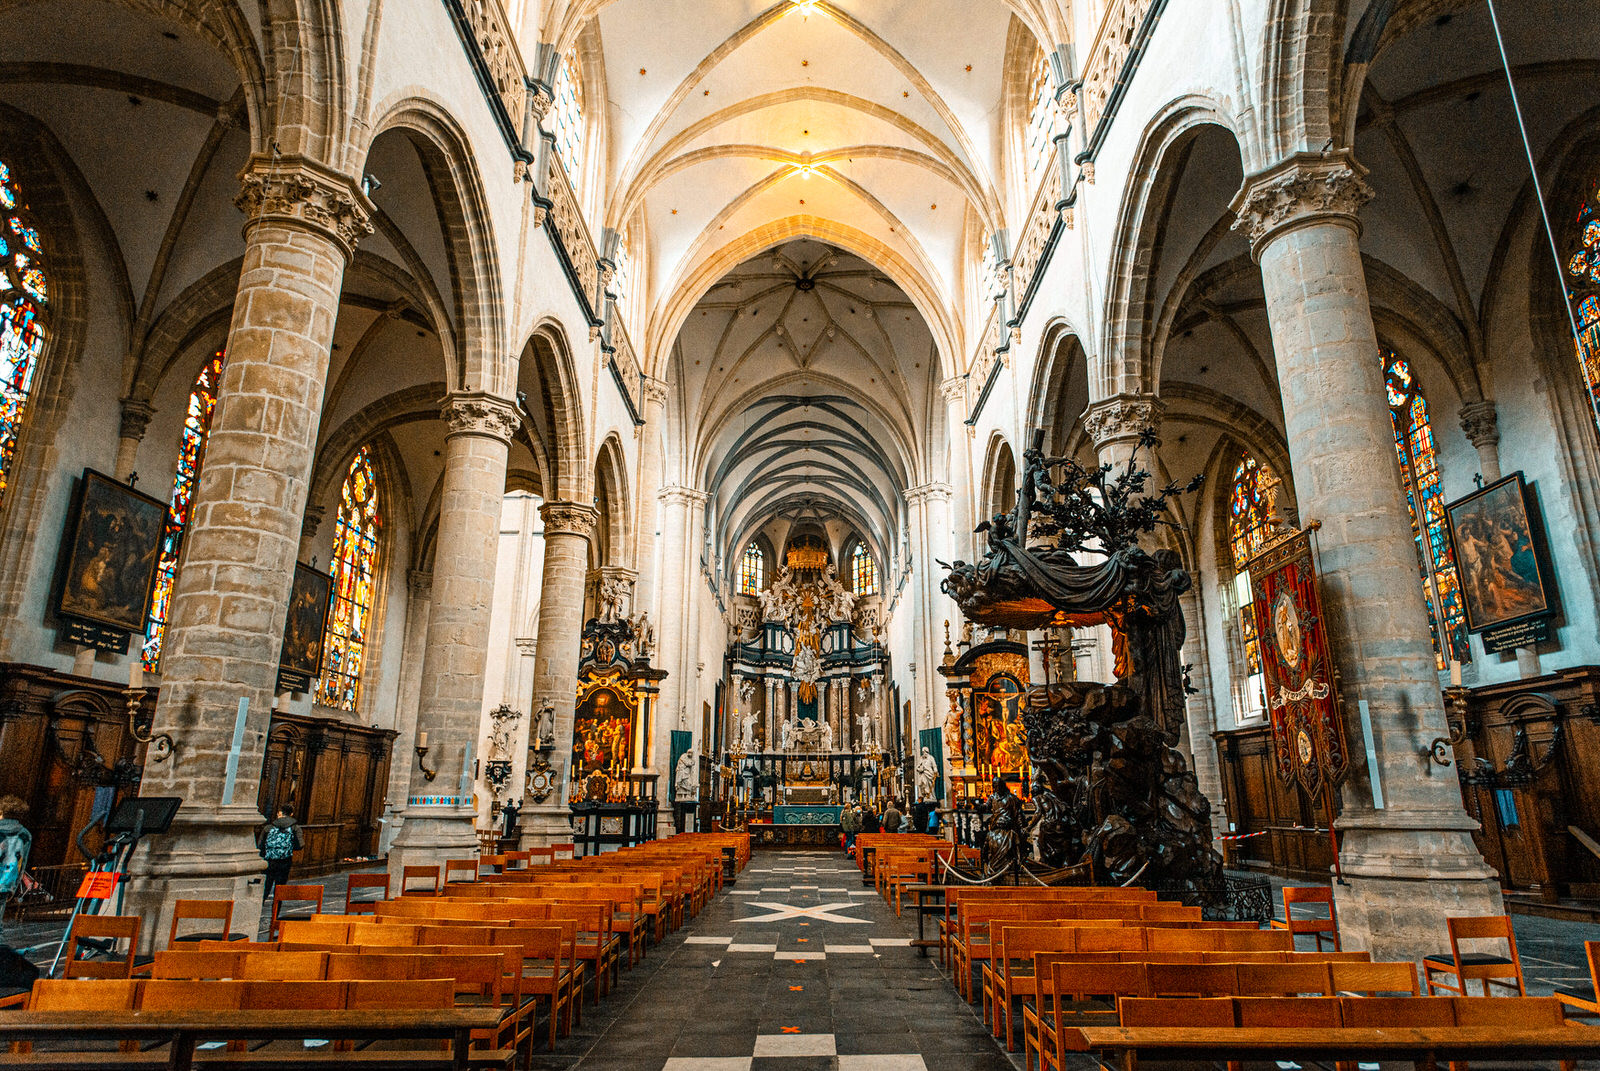 Sint-Andrieskerk